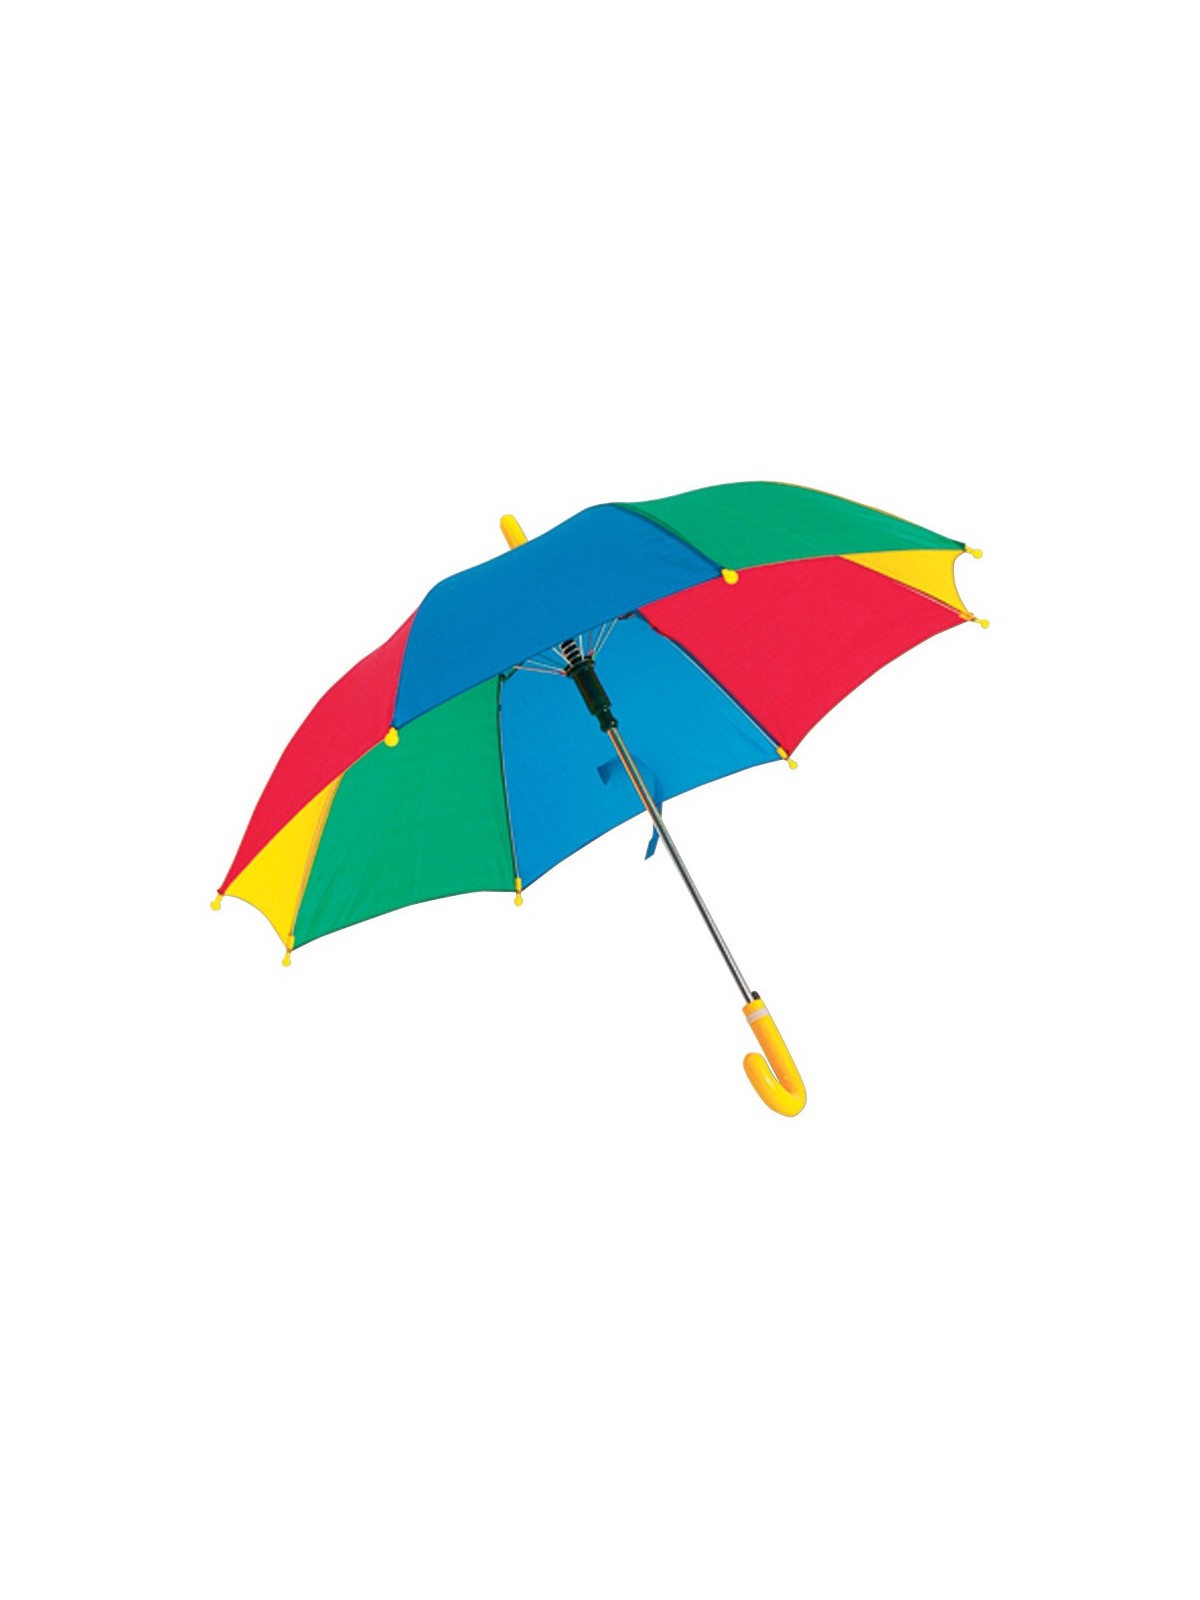 10-220 Parapluie automatique multicolore pour enfant personnalisé